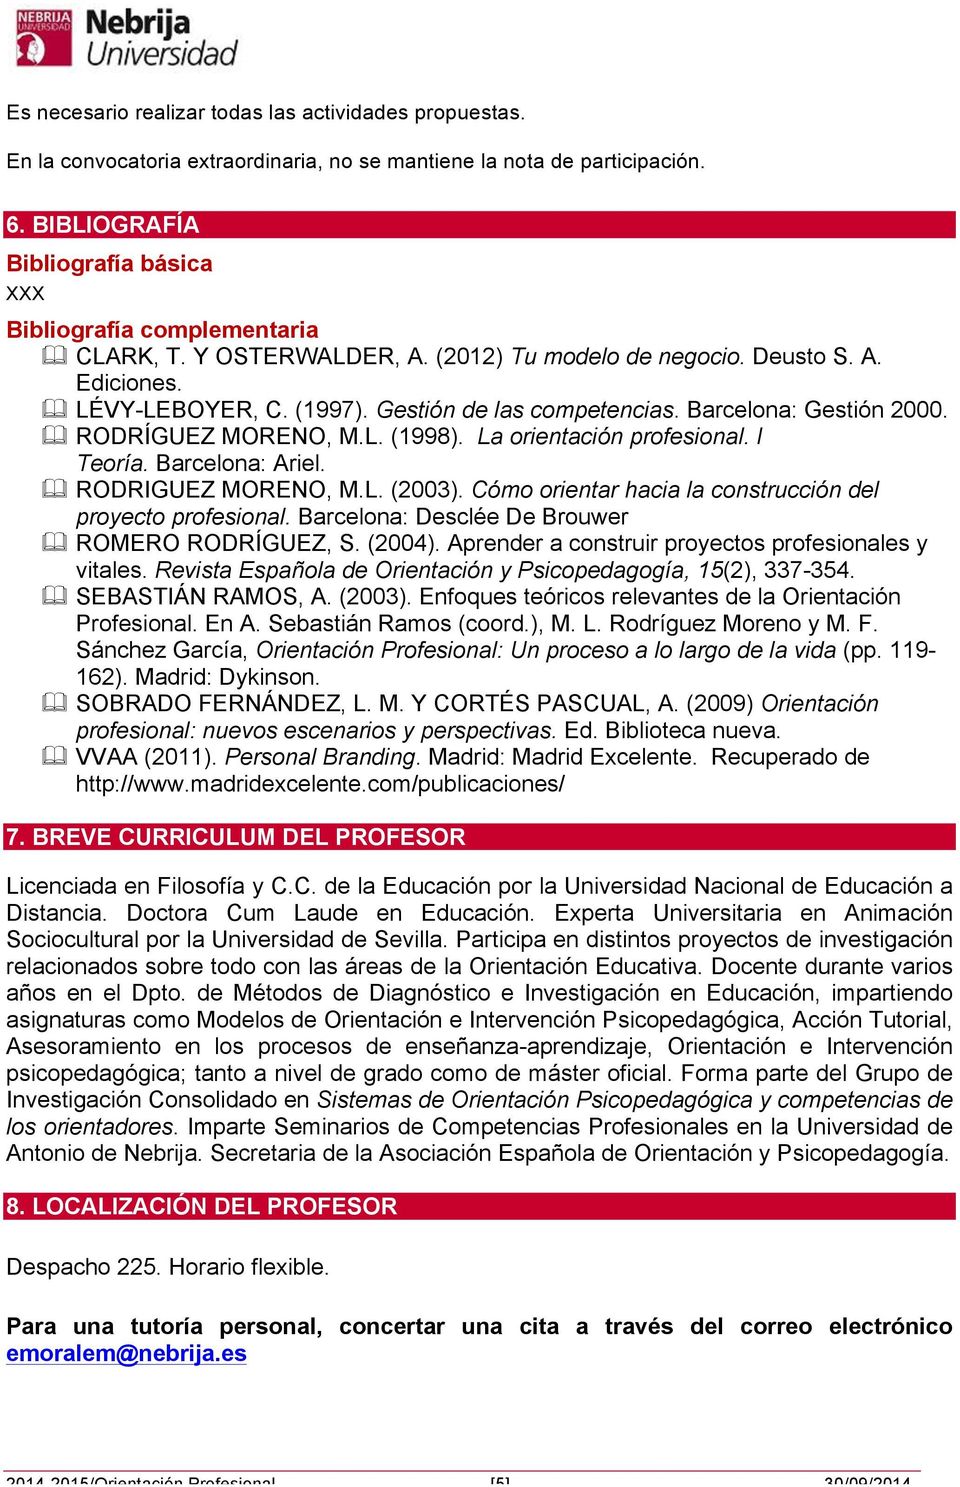 Gestión de las competencias. Barcelona: Gestión 2000. & RODRÍGUEZ MORENO, M.L. (1998). La orientación profesional. I Teoría. Barcelona: Ariel. & RODRIGUEZ MORENO, M.L. (2003).